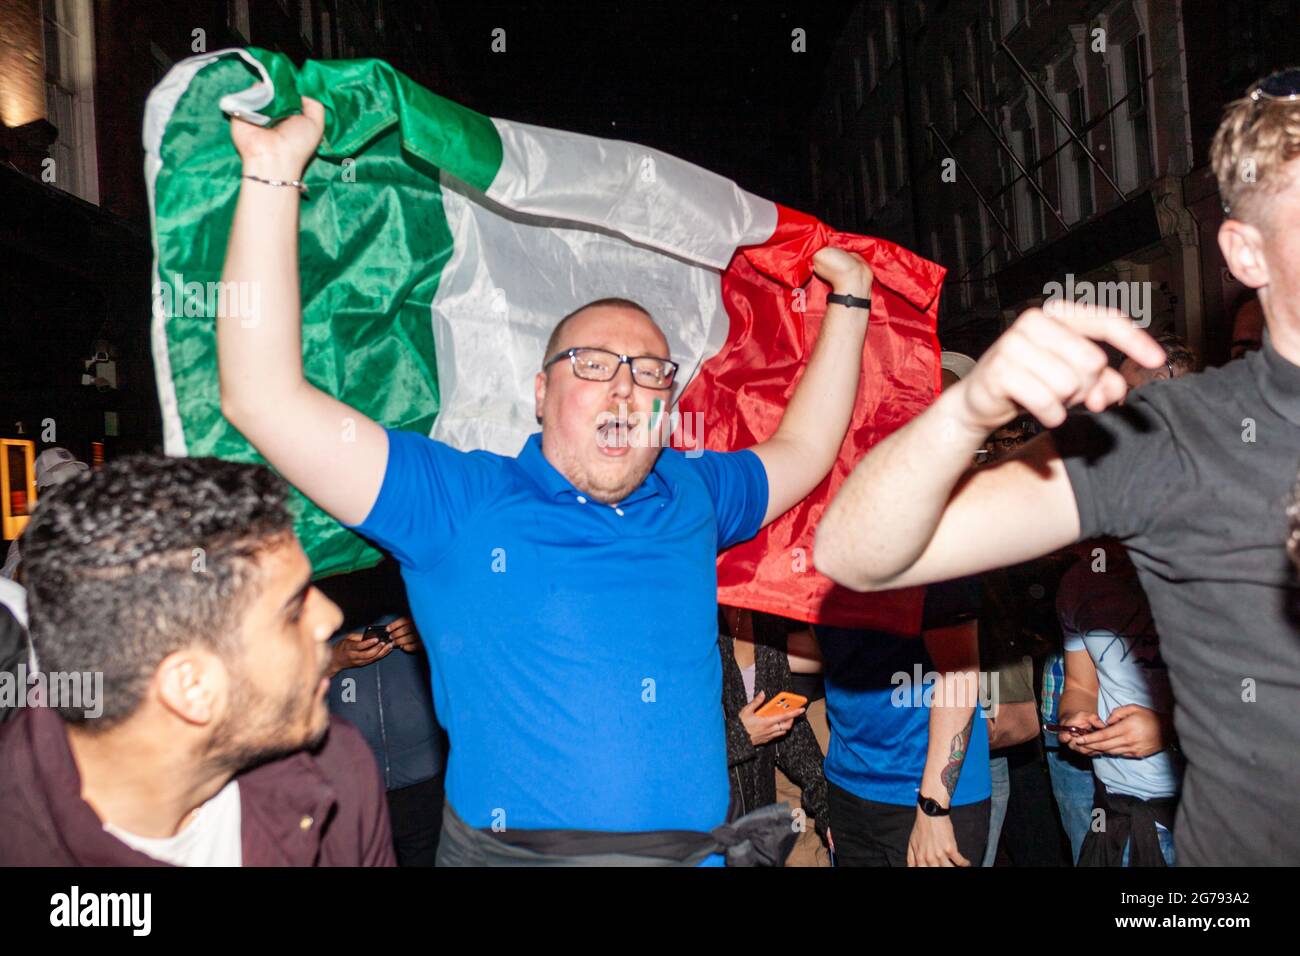 Londres, Angleterre. 11 juillet 2021. Fans italiens après la victoire de l'Euro. Credit: Stefan Weil/Alay Live News Banque D'Images